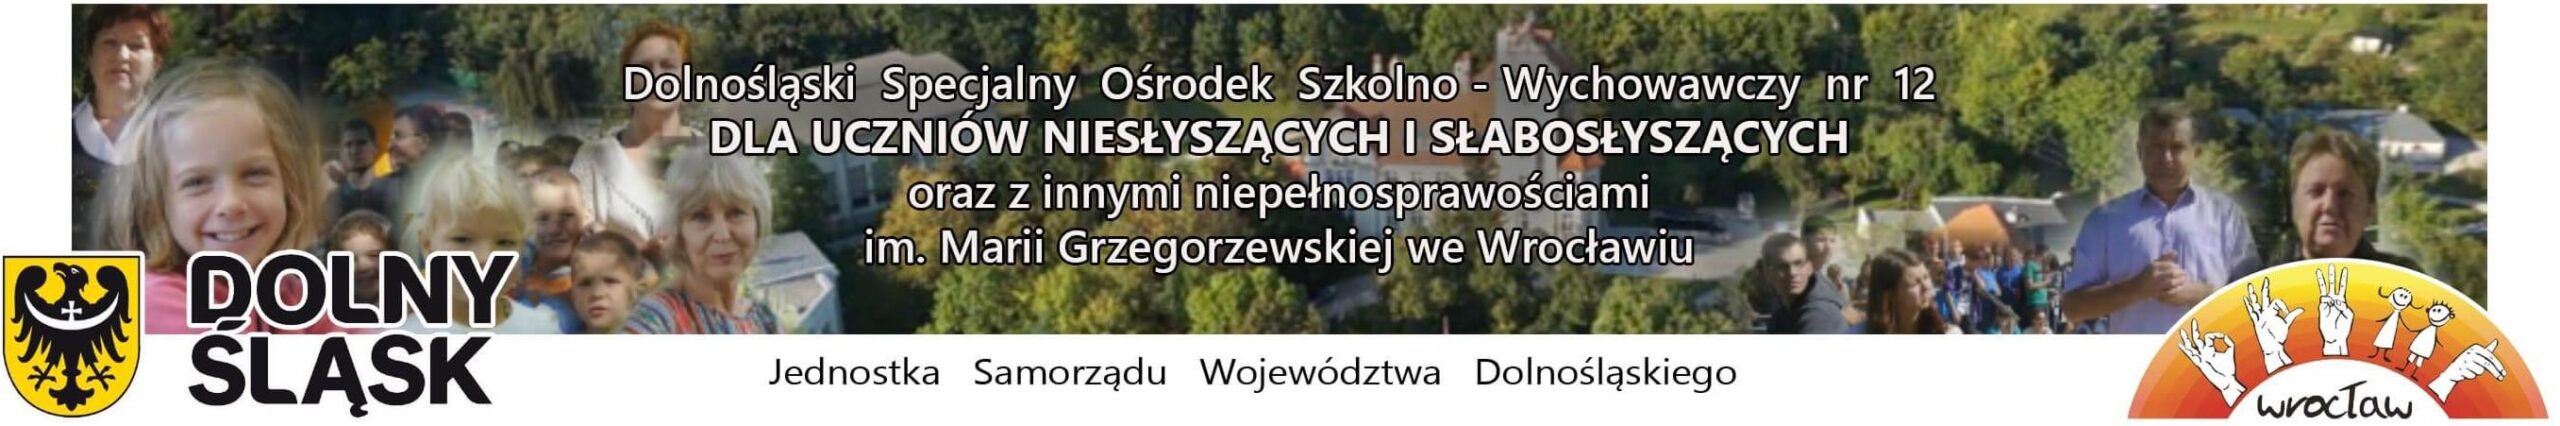 DSOSW nr 12 Wrocław